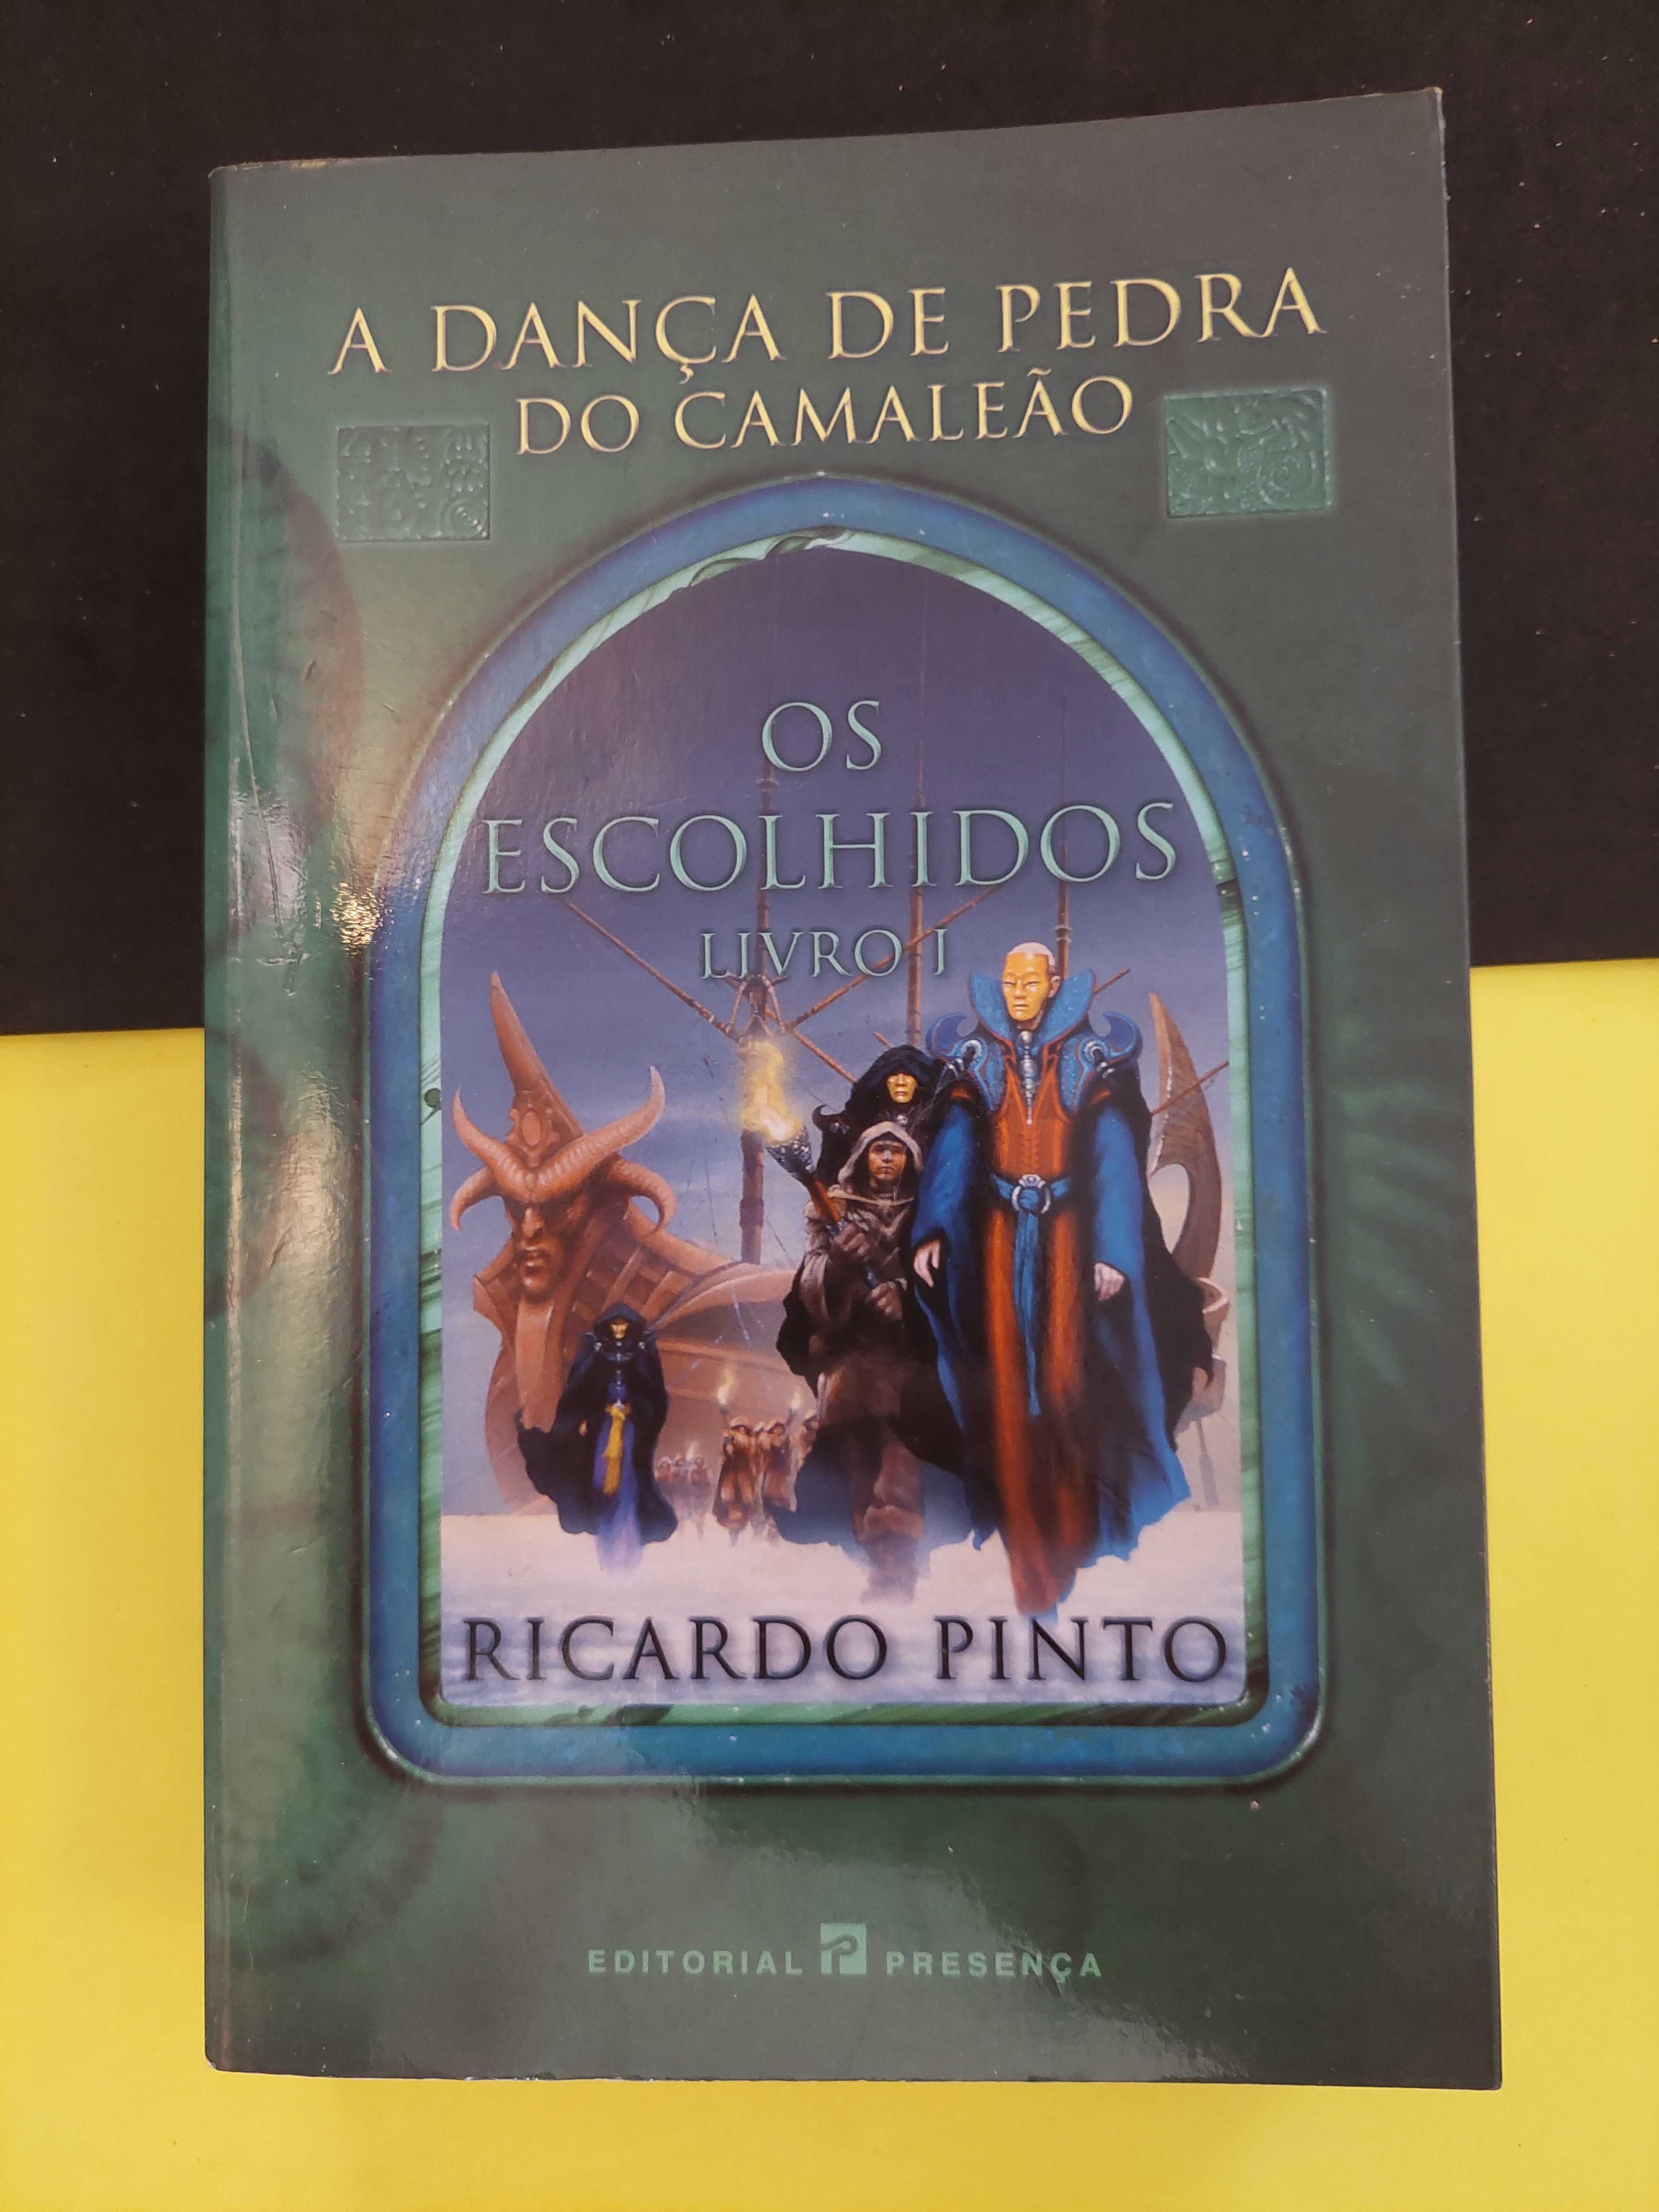 Ricardo Pinto - Os Escolhidos, Livro I